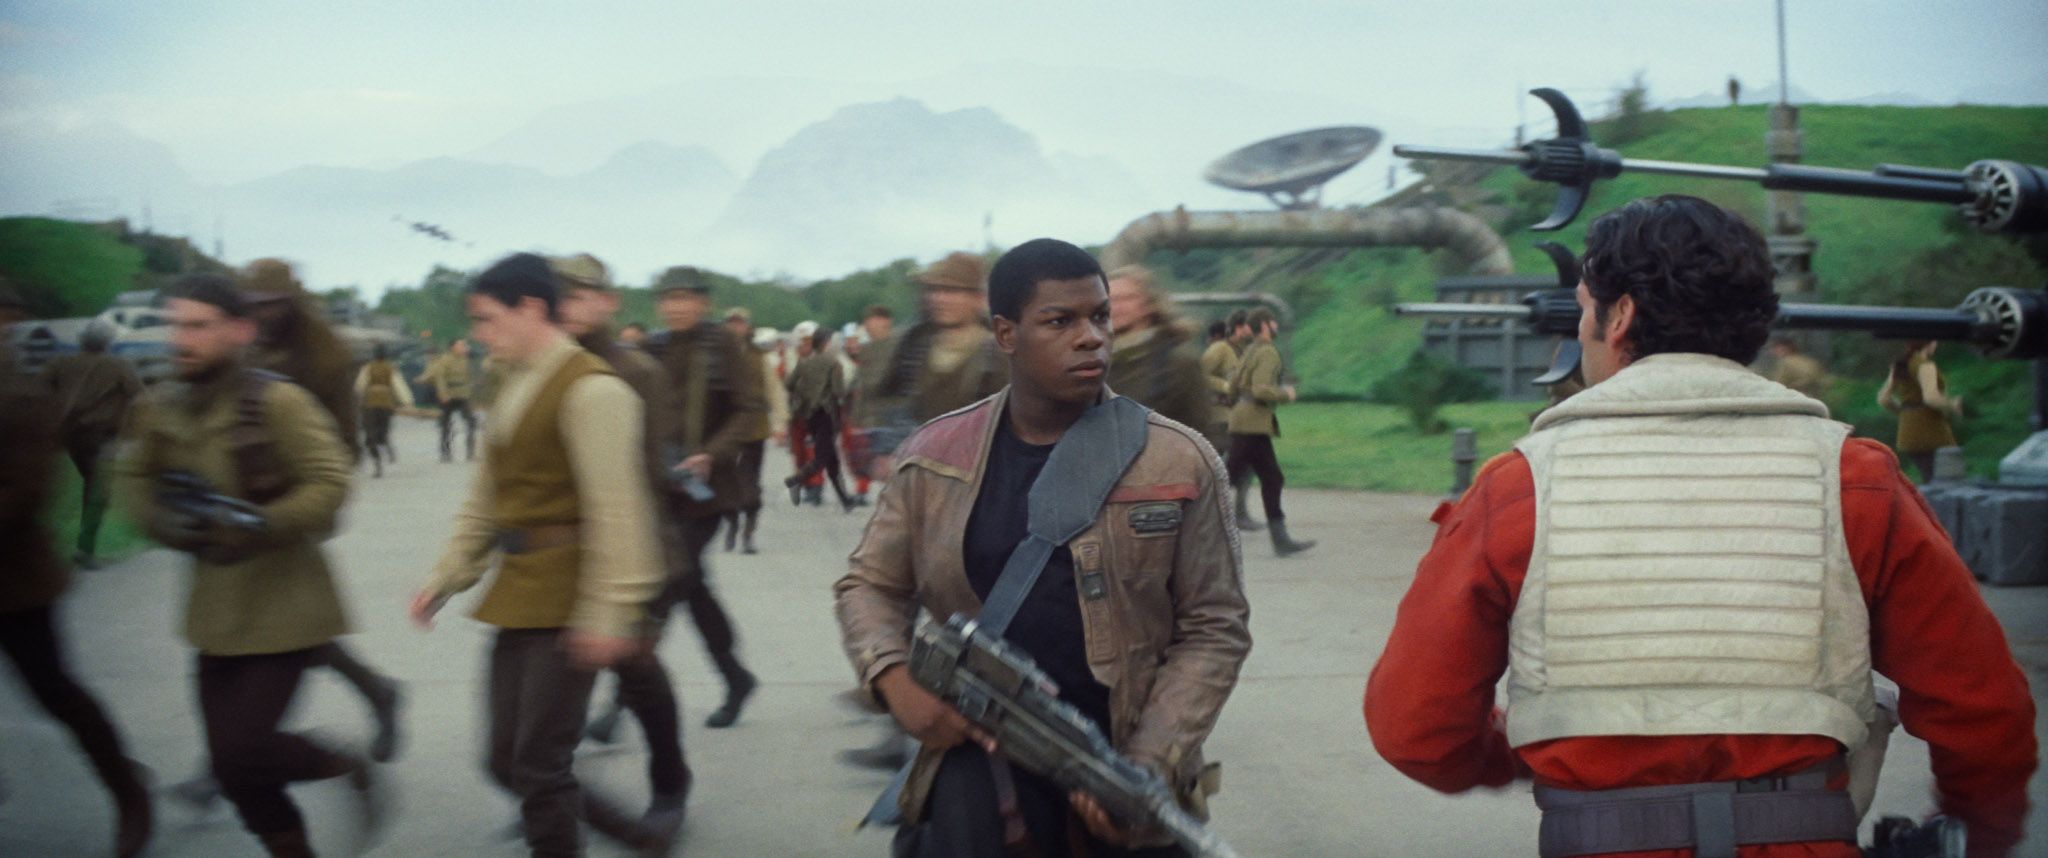 Star Wars 7 Trailer #3 - Finn and Poe Dameron